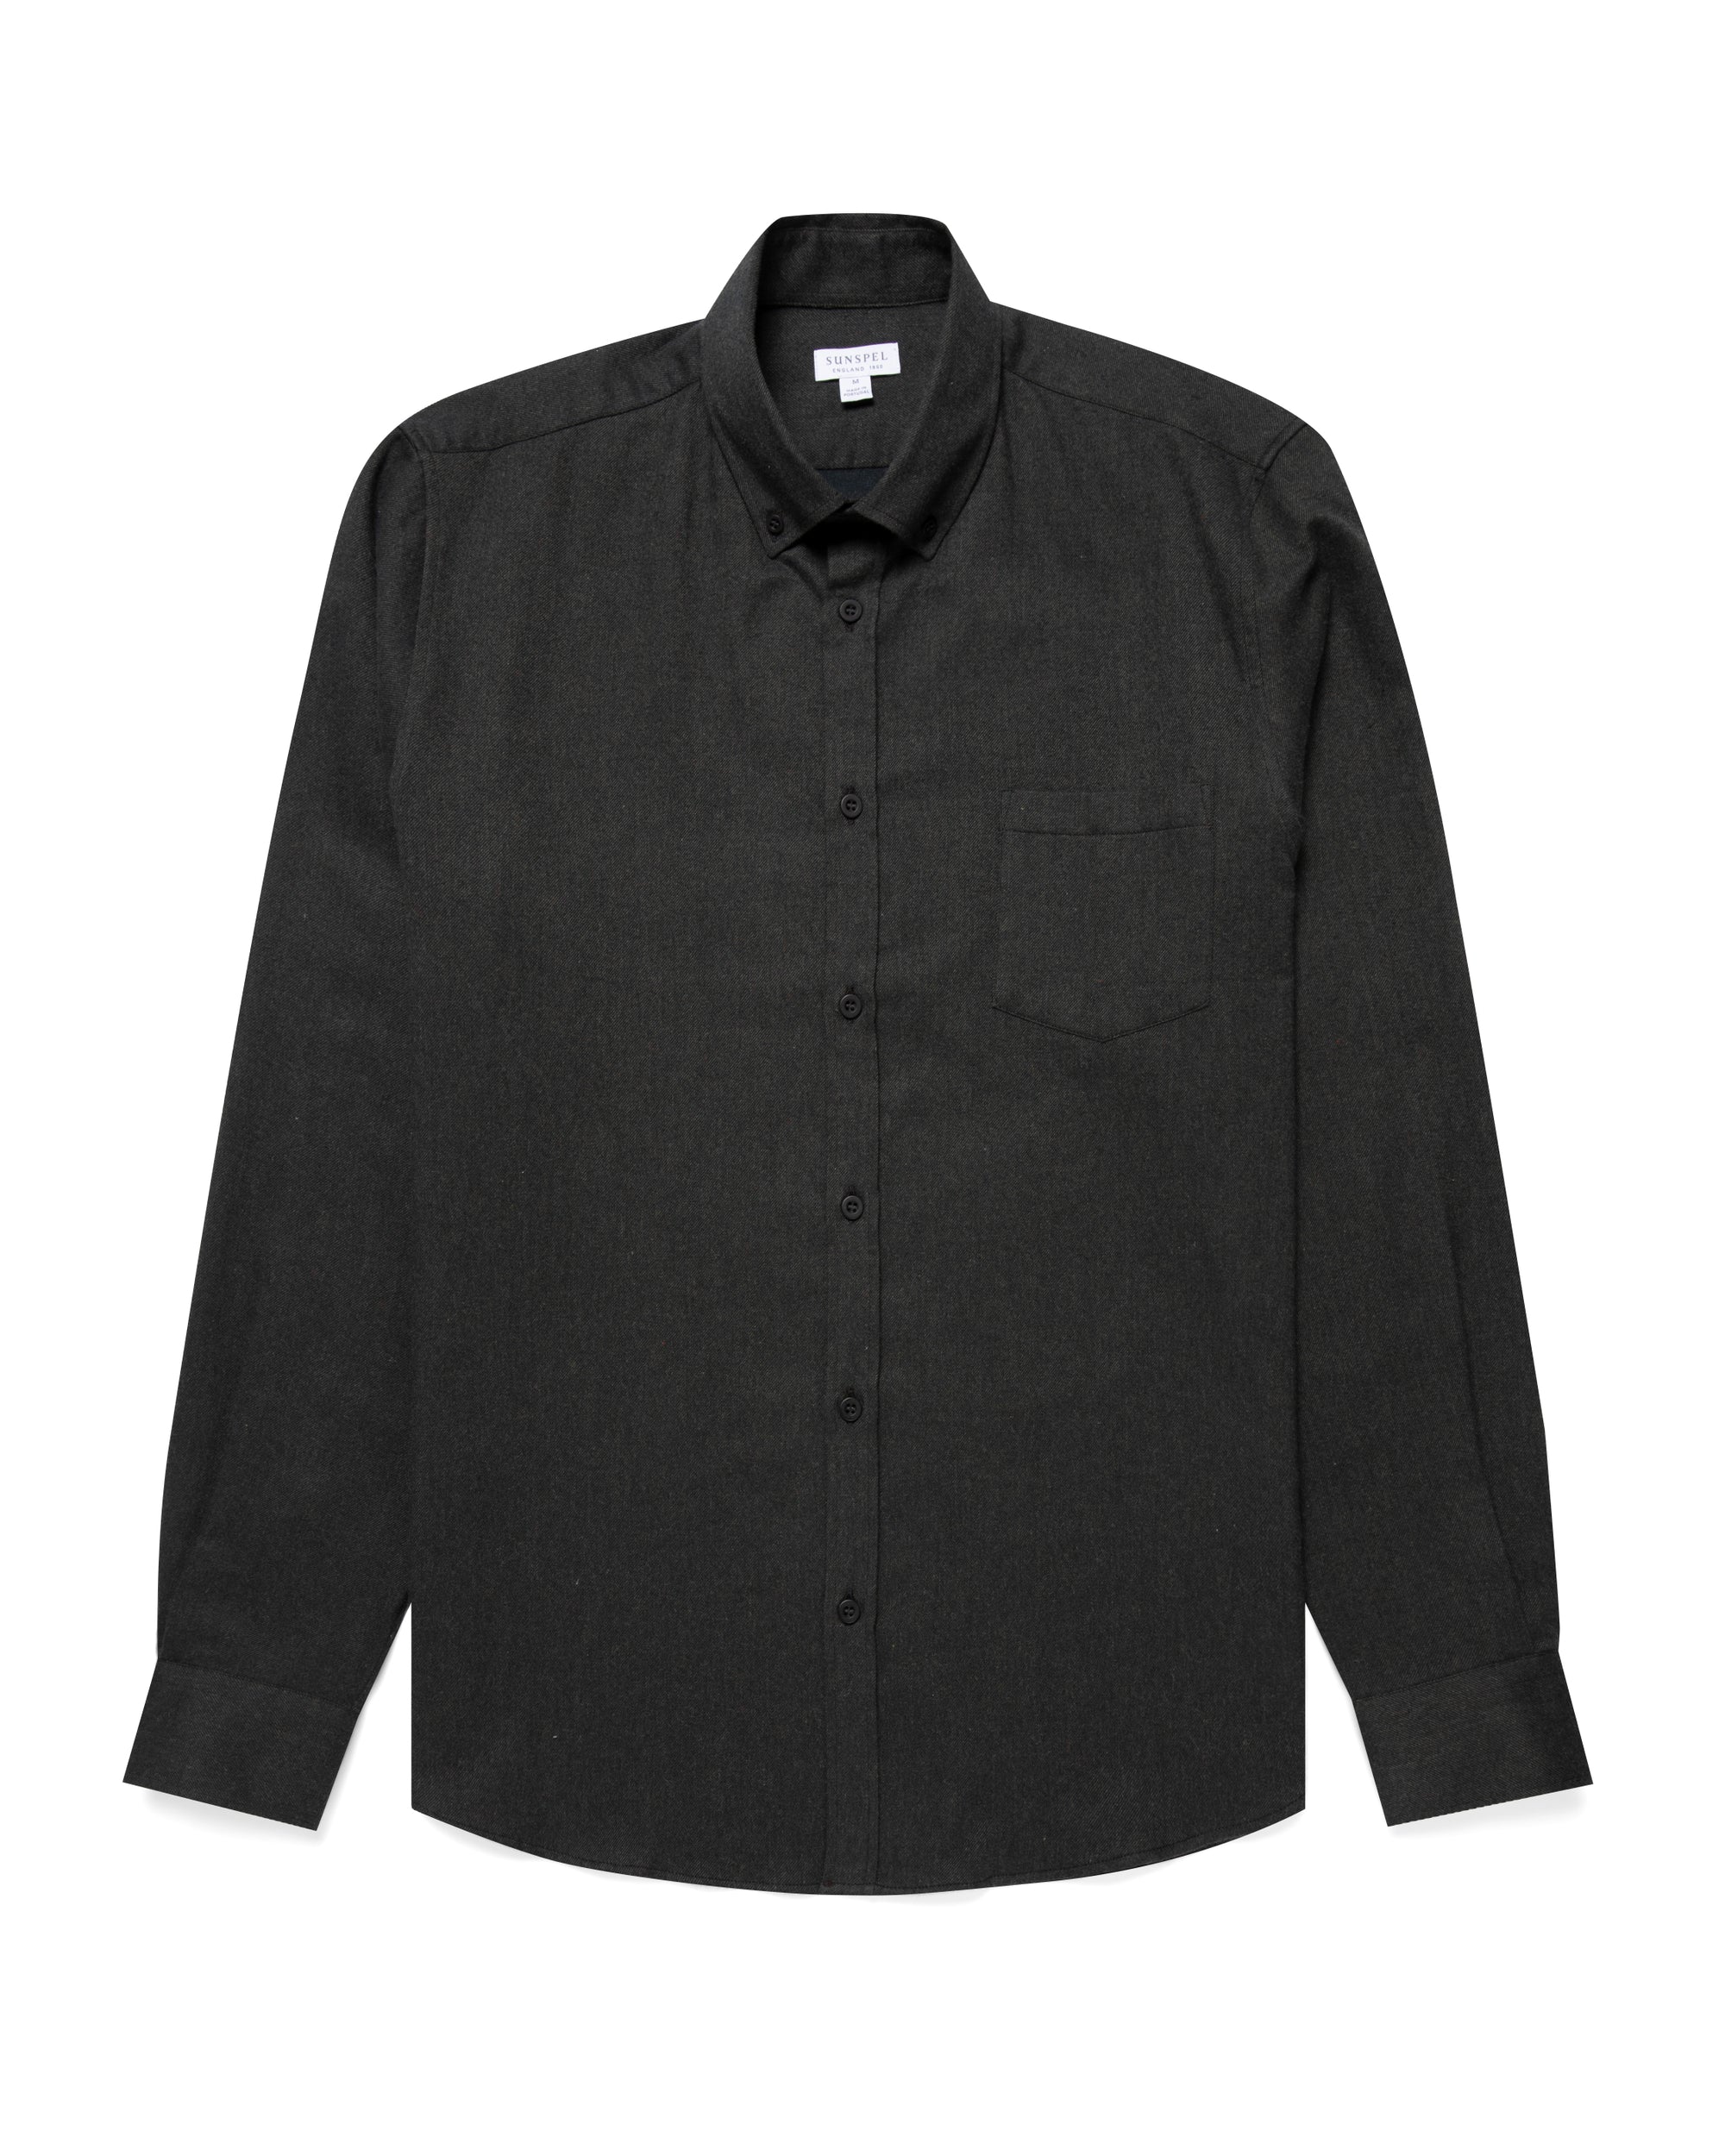 Flannel Button-Down Shirt - Dark Moss Melange